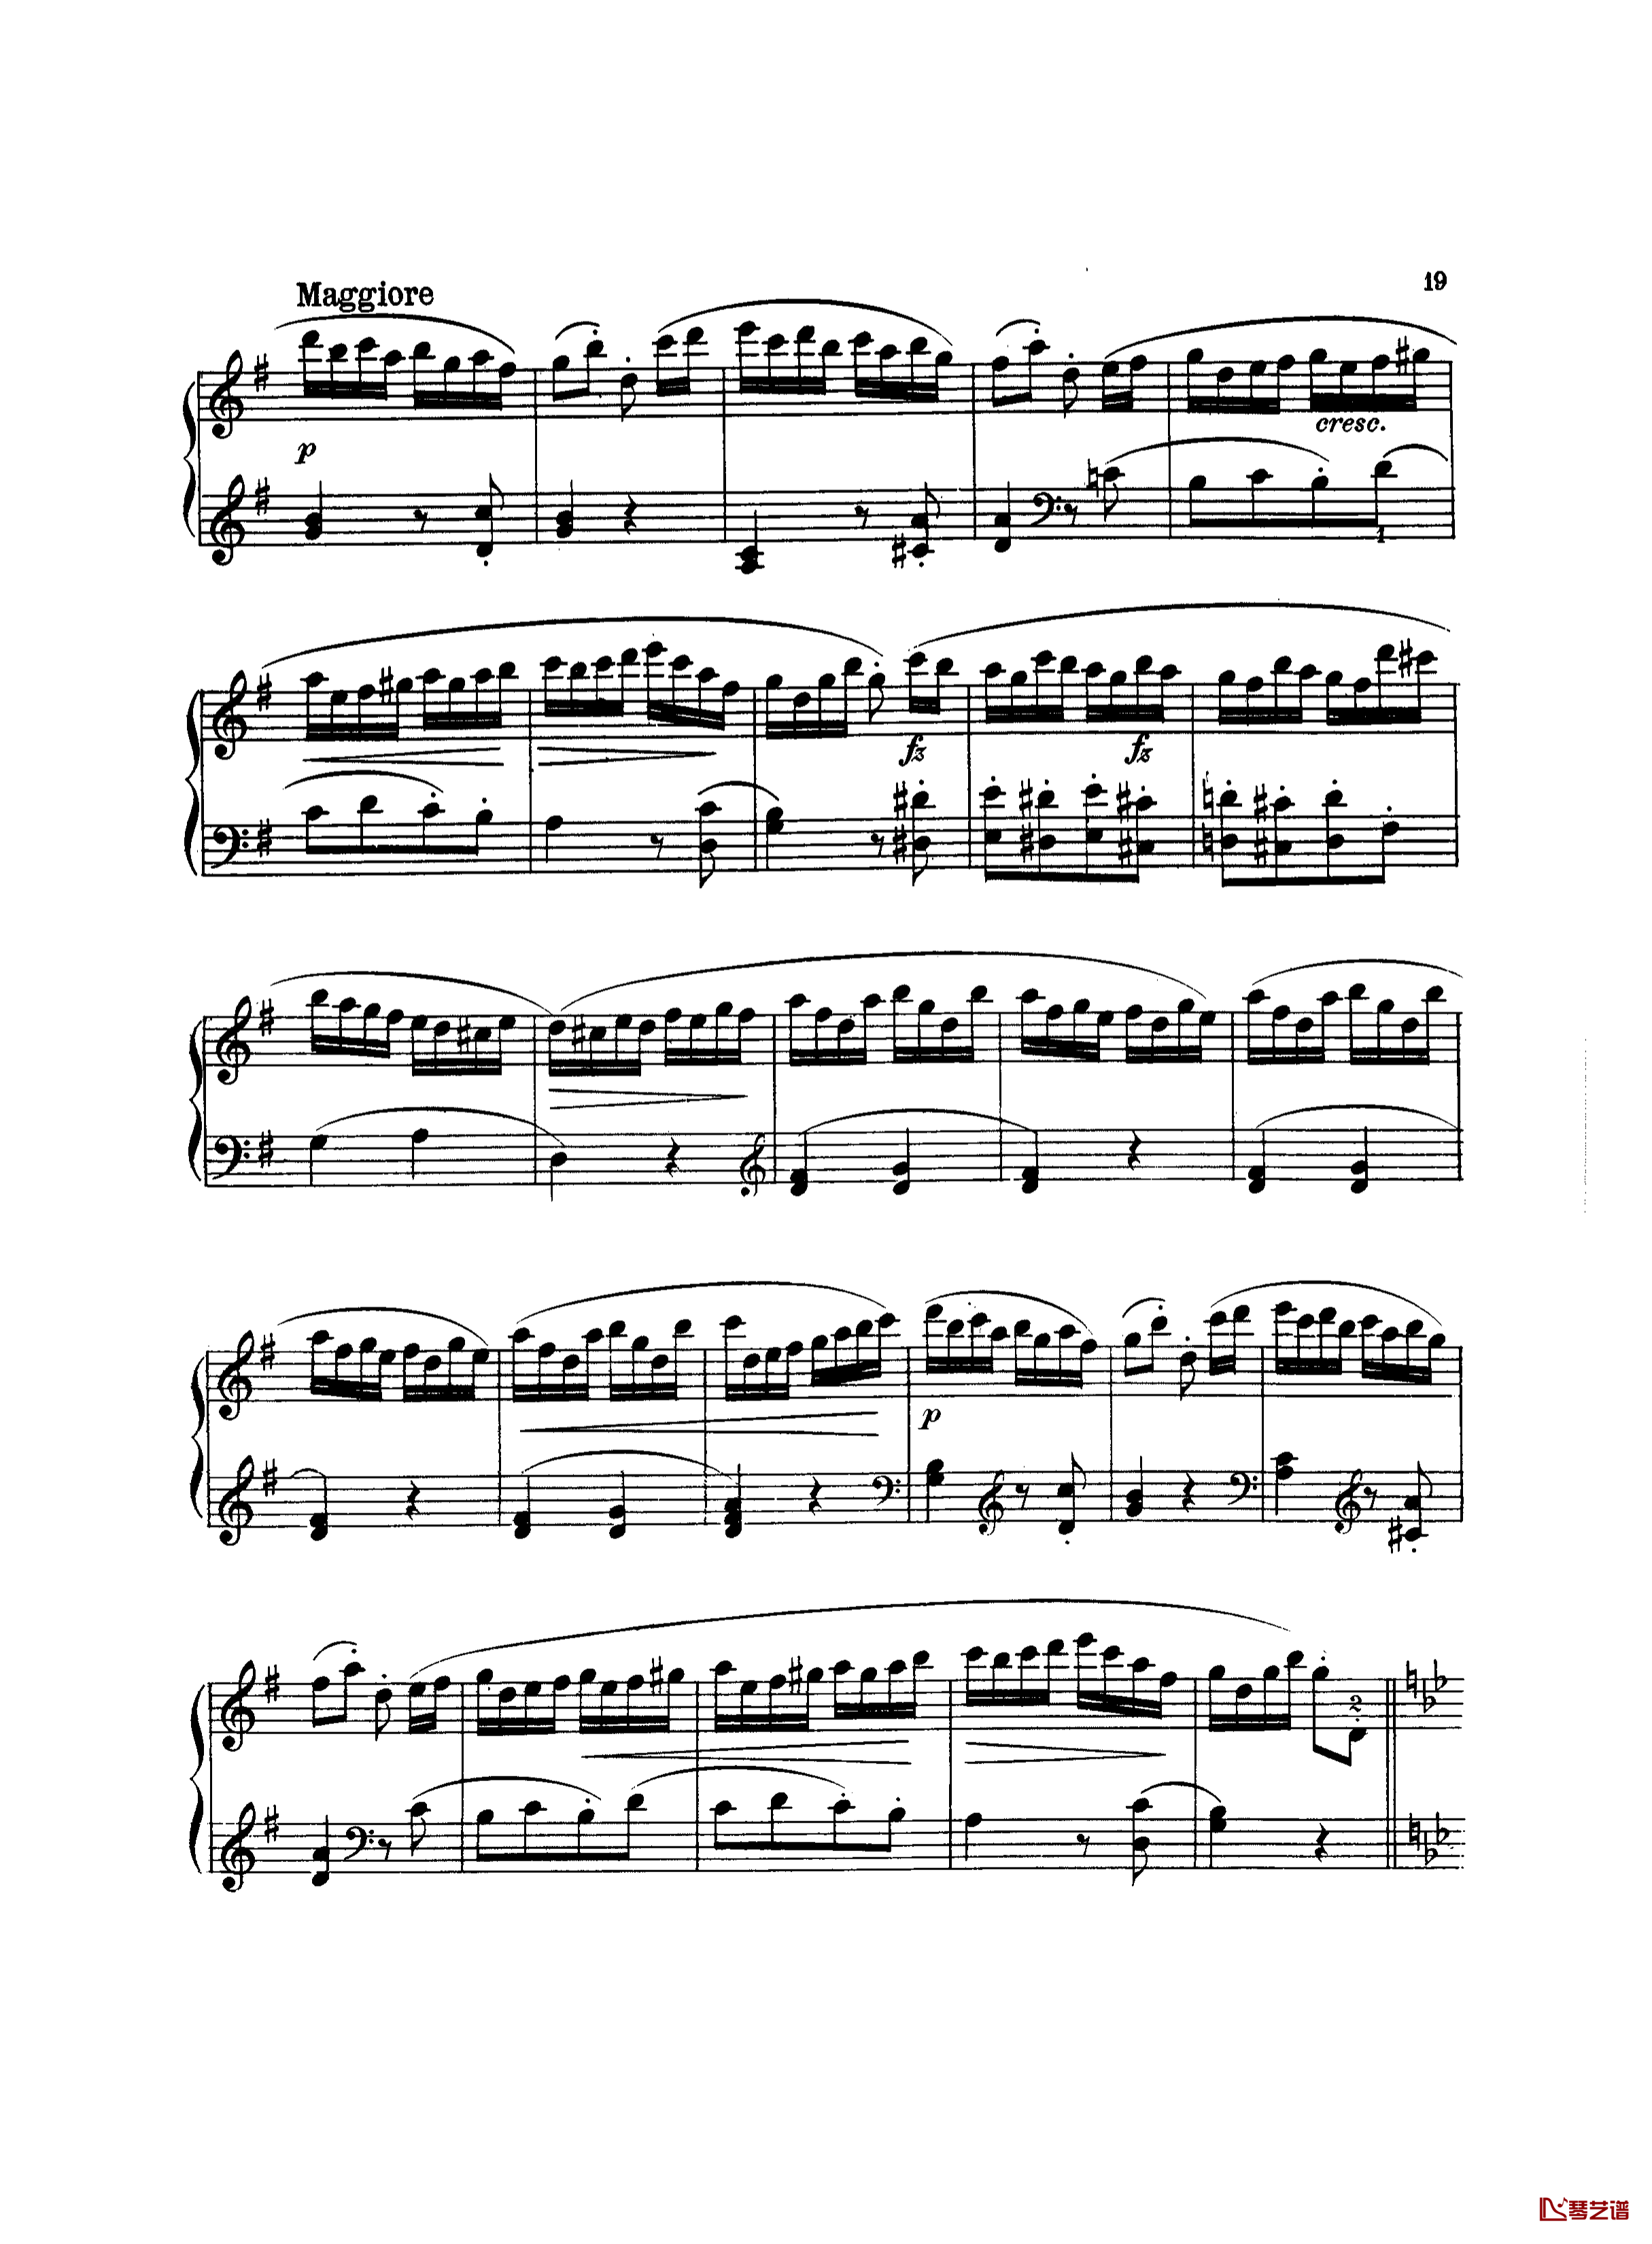 吉普赛回旋曲钢琴谱-带指法版-海顿4